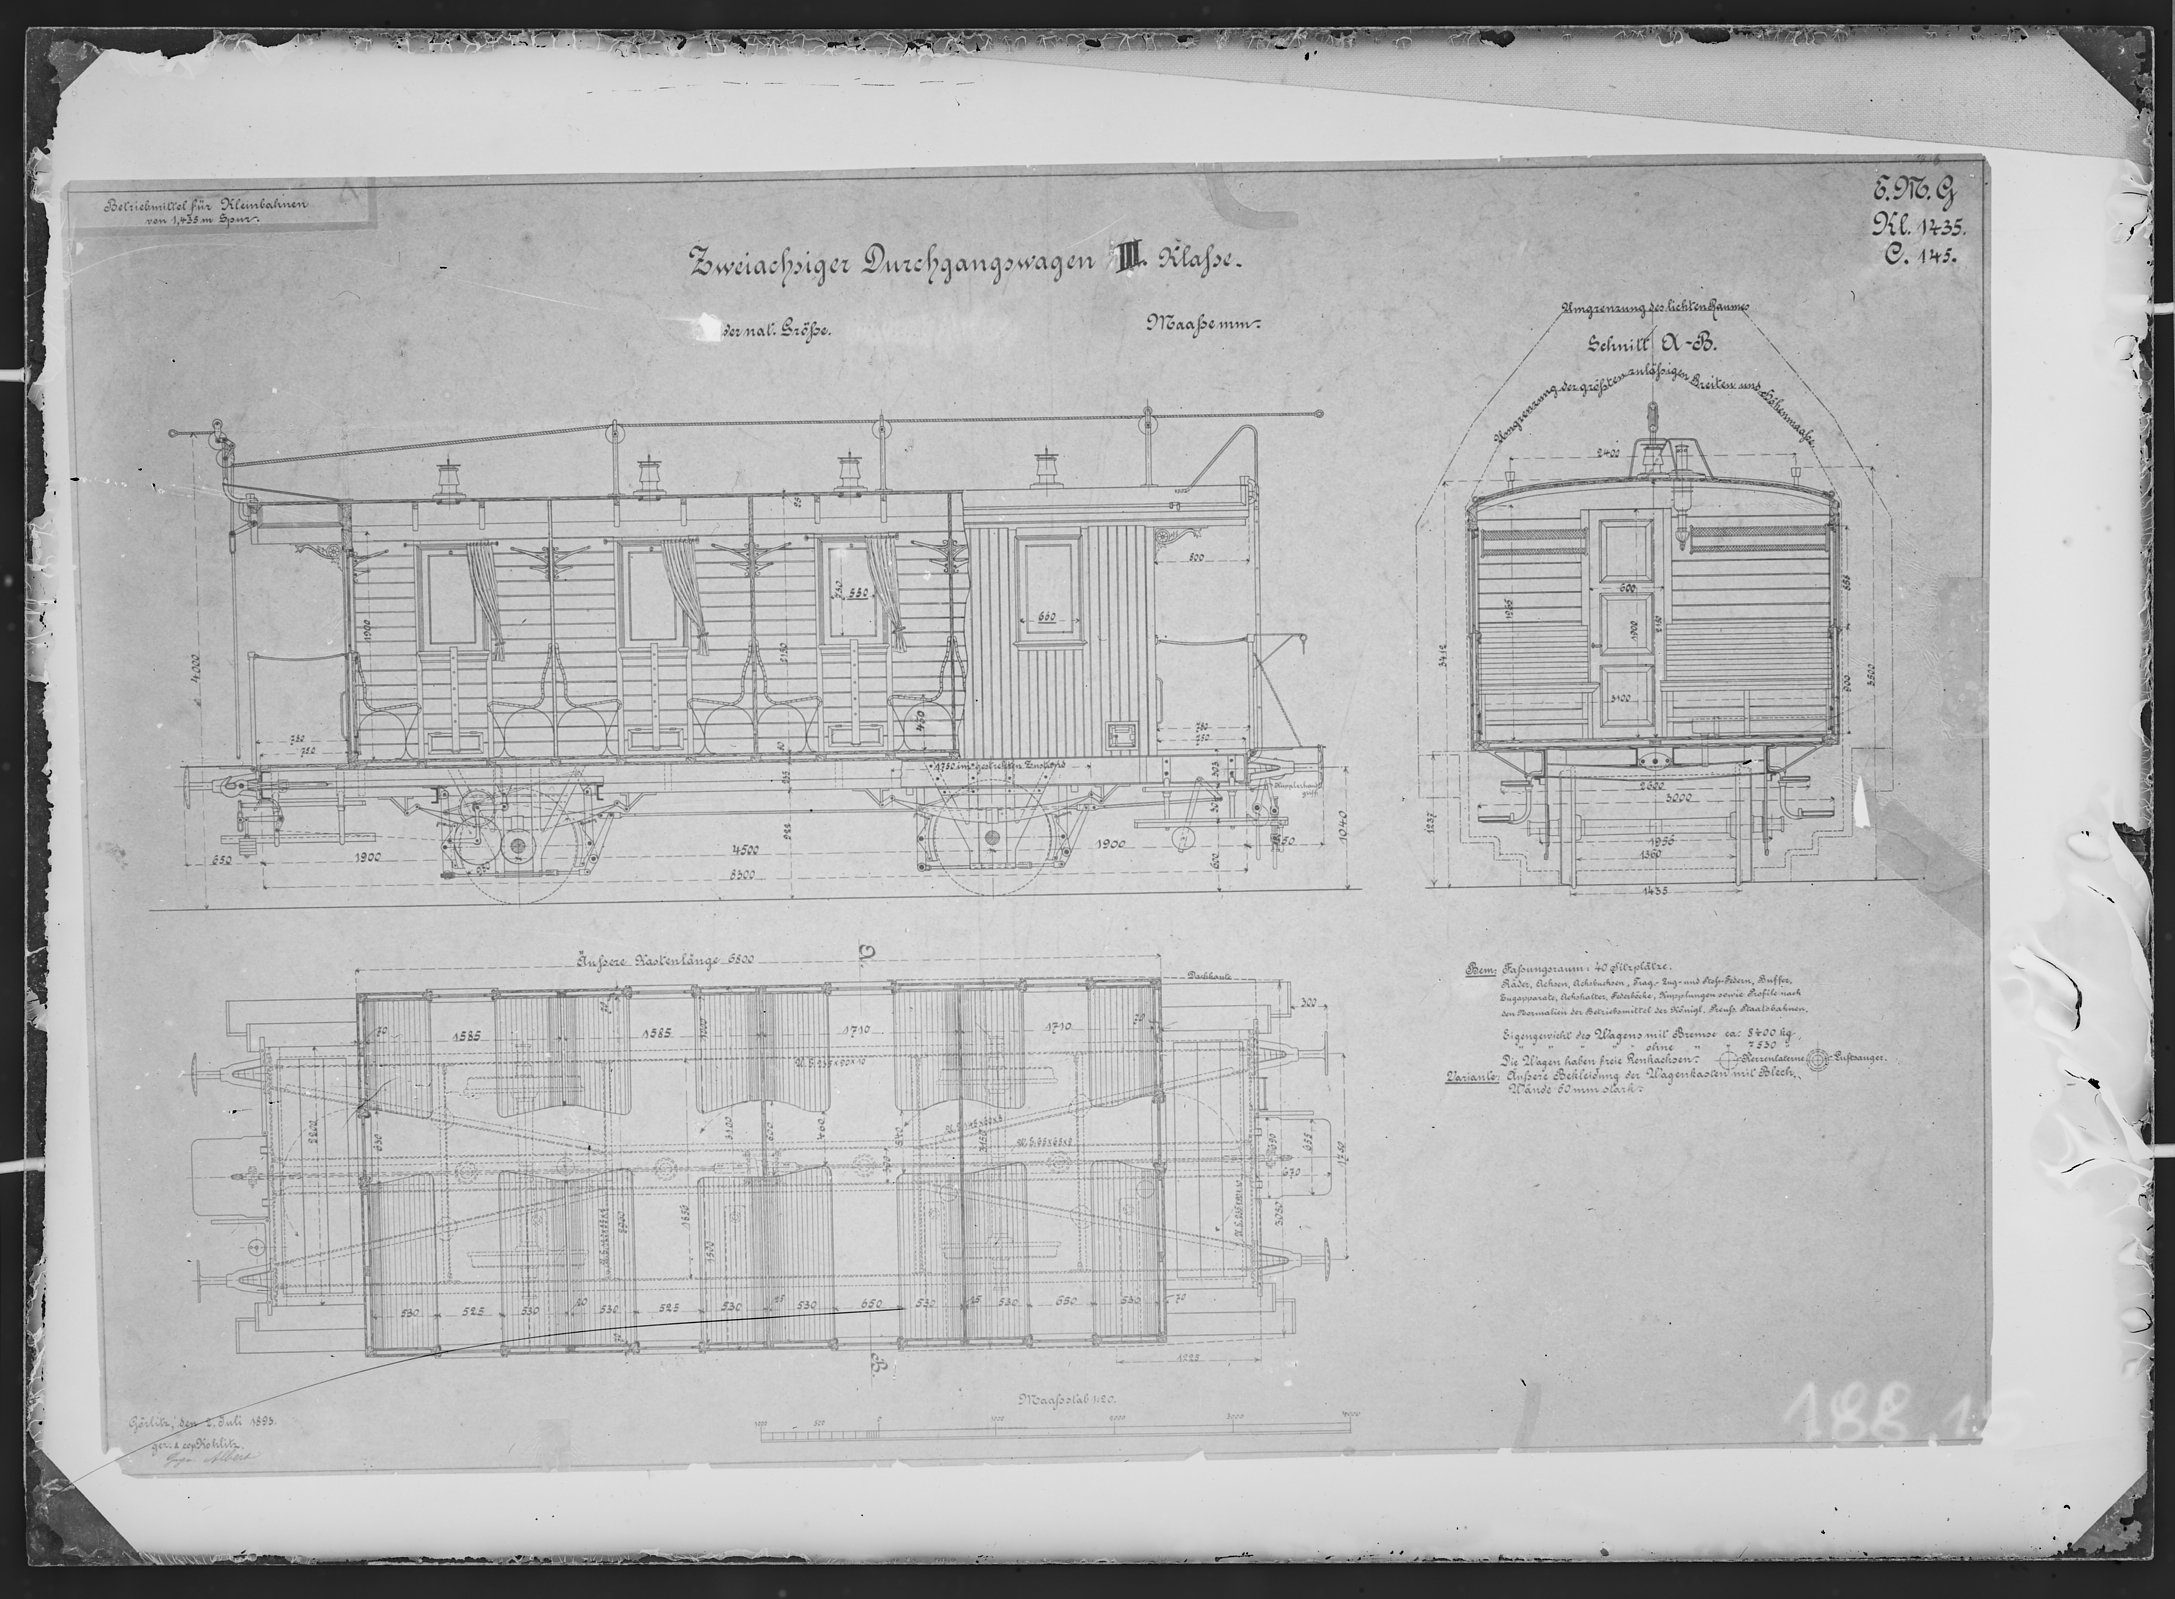 Fotografie: Maßzeichnung eines zweiachsigen Durchgangswagens dritter Klasse für Kleinbahn, Maßstab 1:20 (Spurweite: 1435 mm), 1895. (Verkehrsmuseum Dresden CC BY-NC-SA)